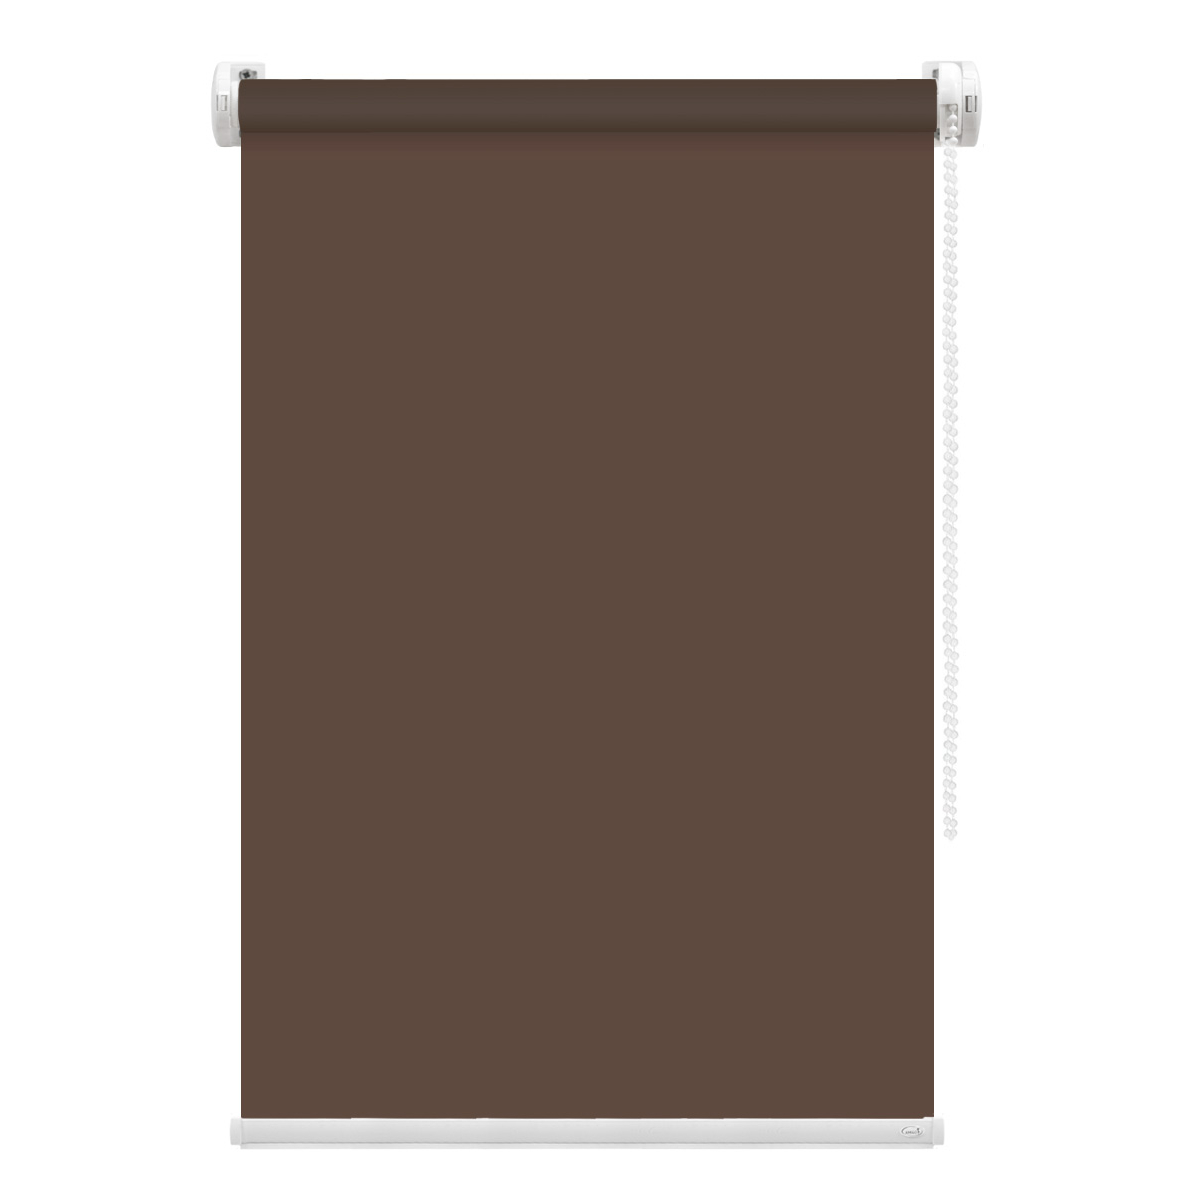 Рулонная штора FixLine Amigo Basic коричневая 80х160 см рулонная штора fixline amigo basic коричневая 50х160 см